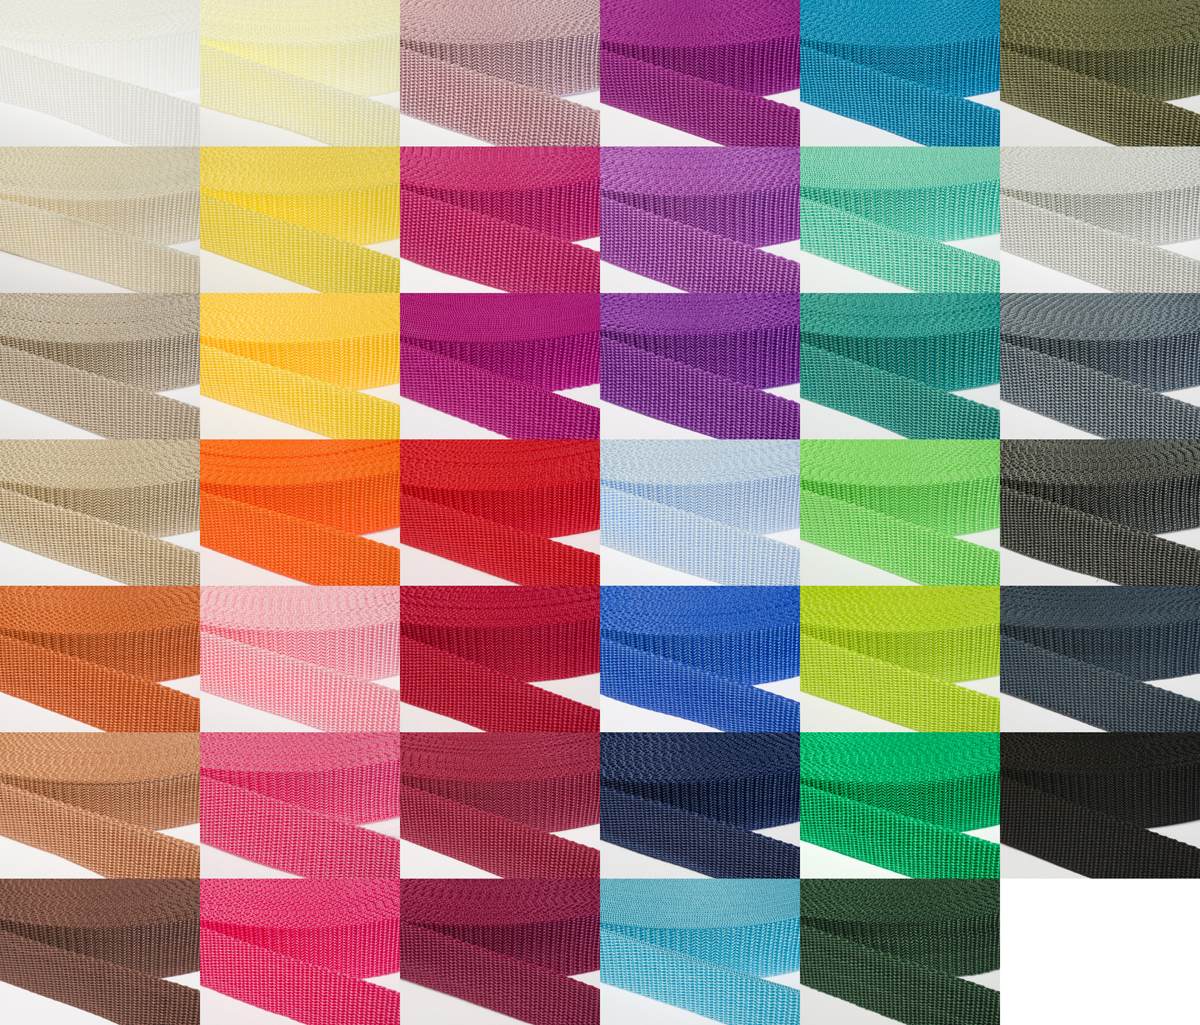 Gurtband 30mm breit aus Polypropylen in 41 Farben 20 - ziegelrot 12 Meter